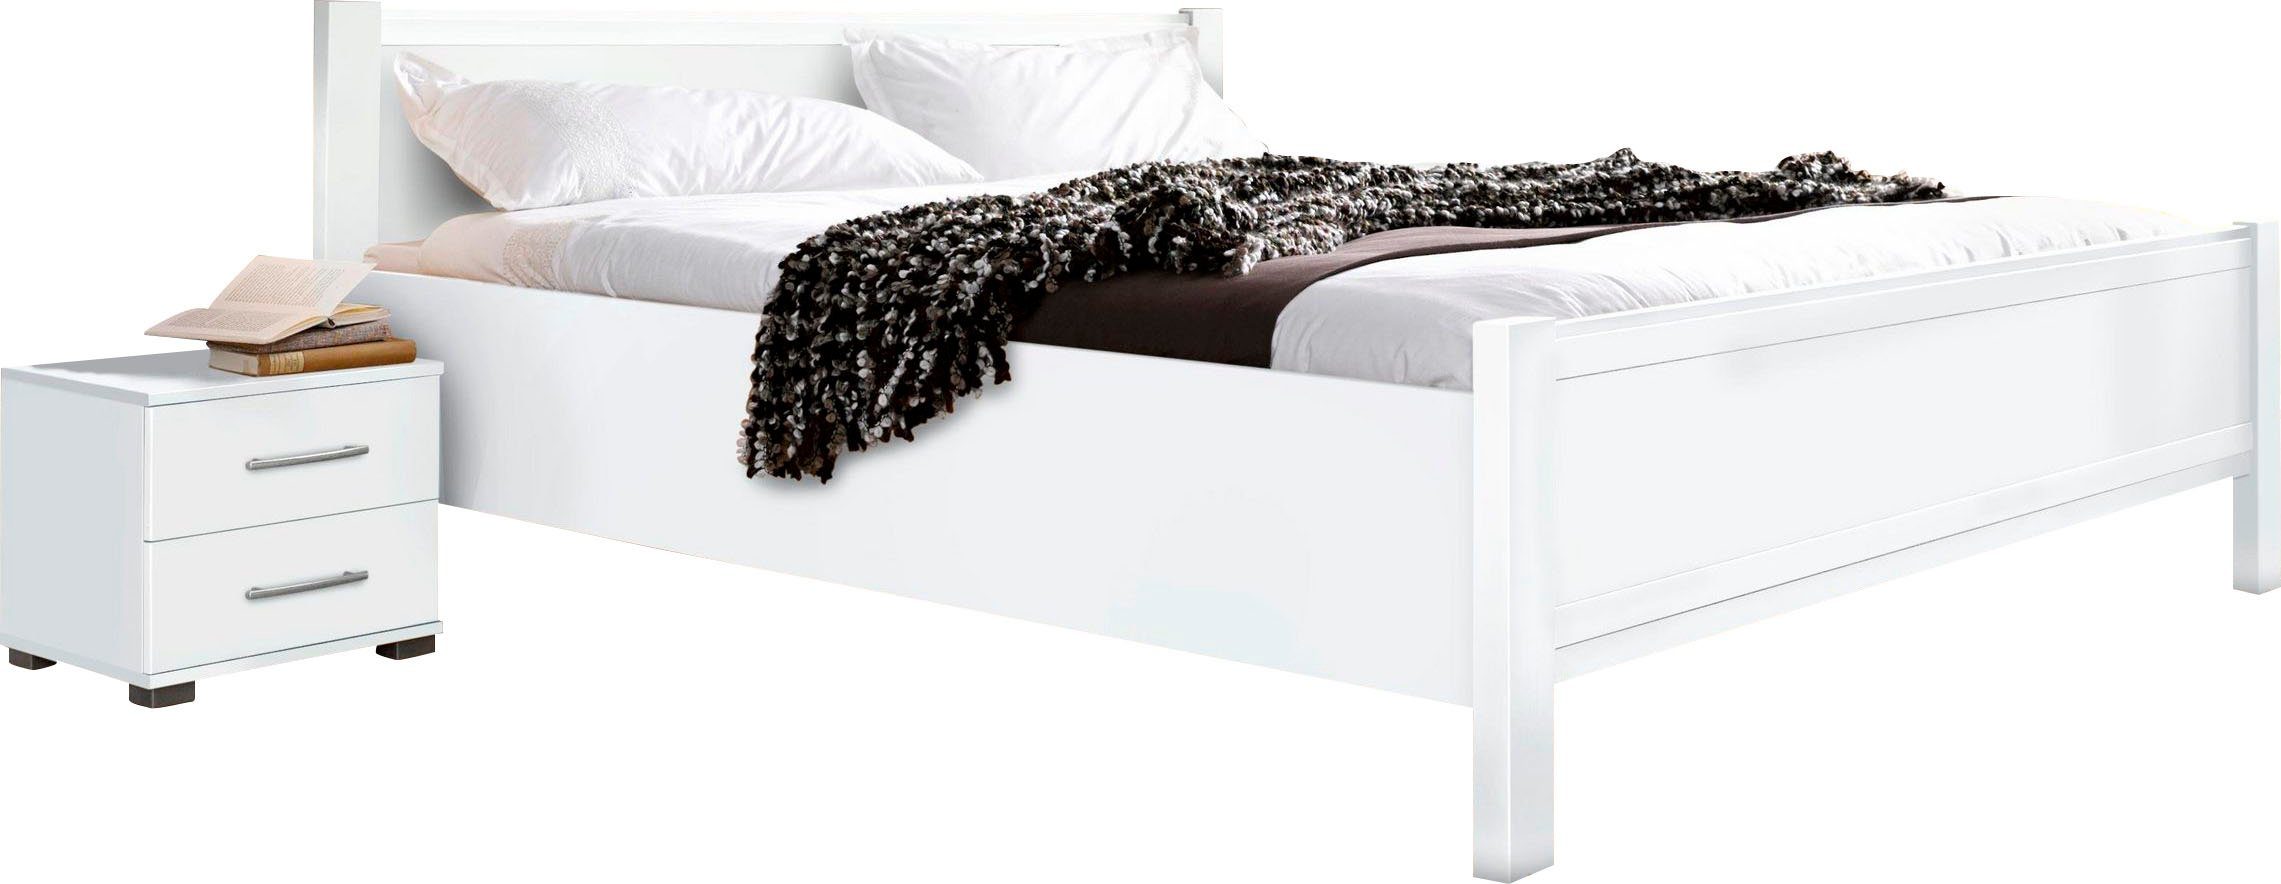 priess Bett Husum Schlafzimmer Jugendzimmer Rahmenbett, mit Komforthöhe verschiedene Ausführungen hochwertige Premium Qualität